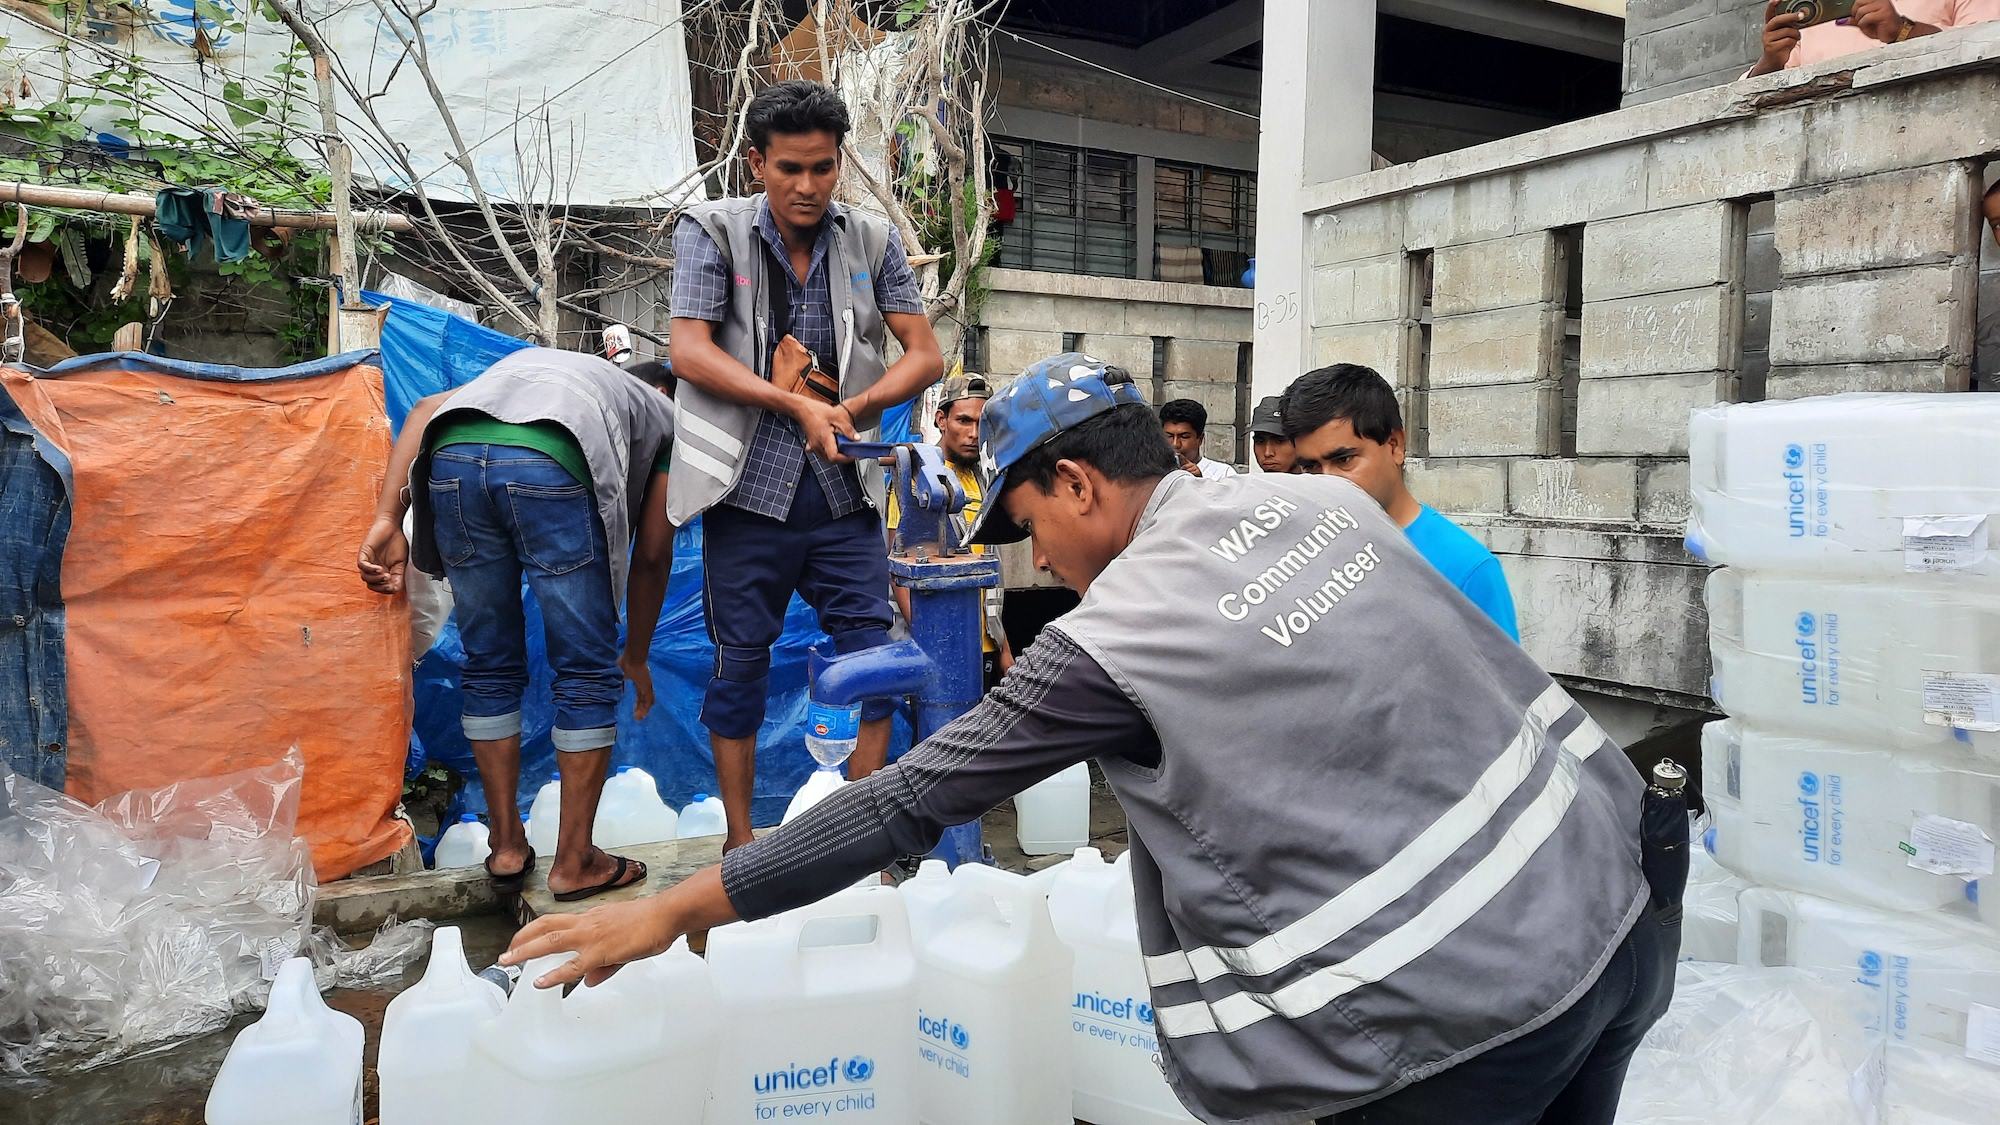 Les agences de l'ONU distribuent des produits de première nécessité aux personnes hébergées dans les abris cycloniques au Bangladesh.